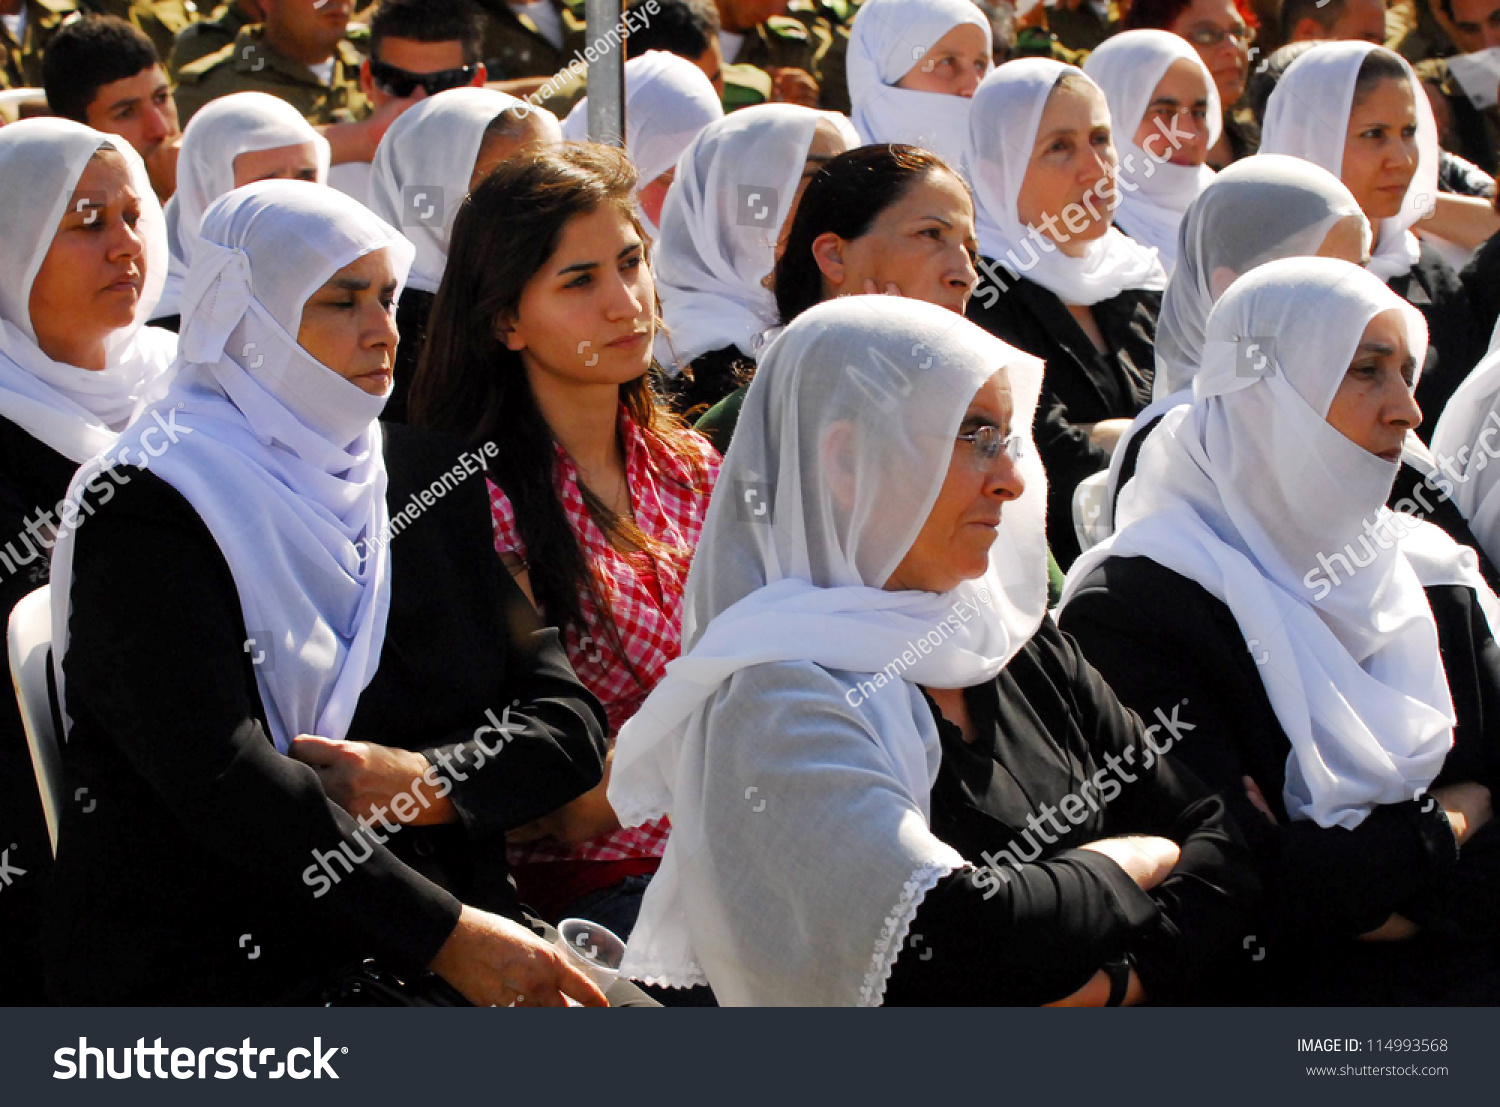 stock-photo-majdal-shams-september-druze-women-from-majdal-shams-israel-on-september-the-number-114993568.jpg